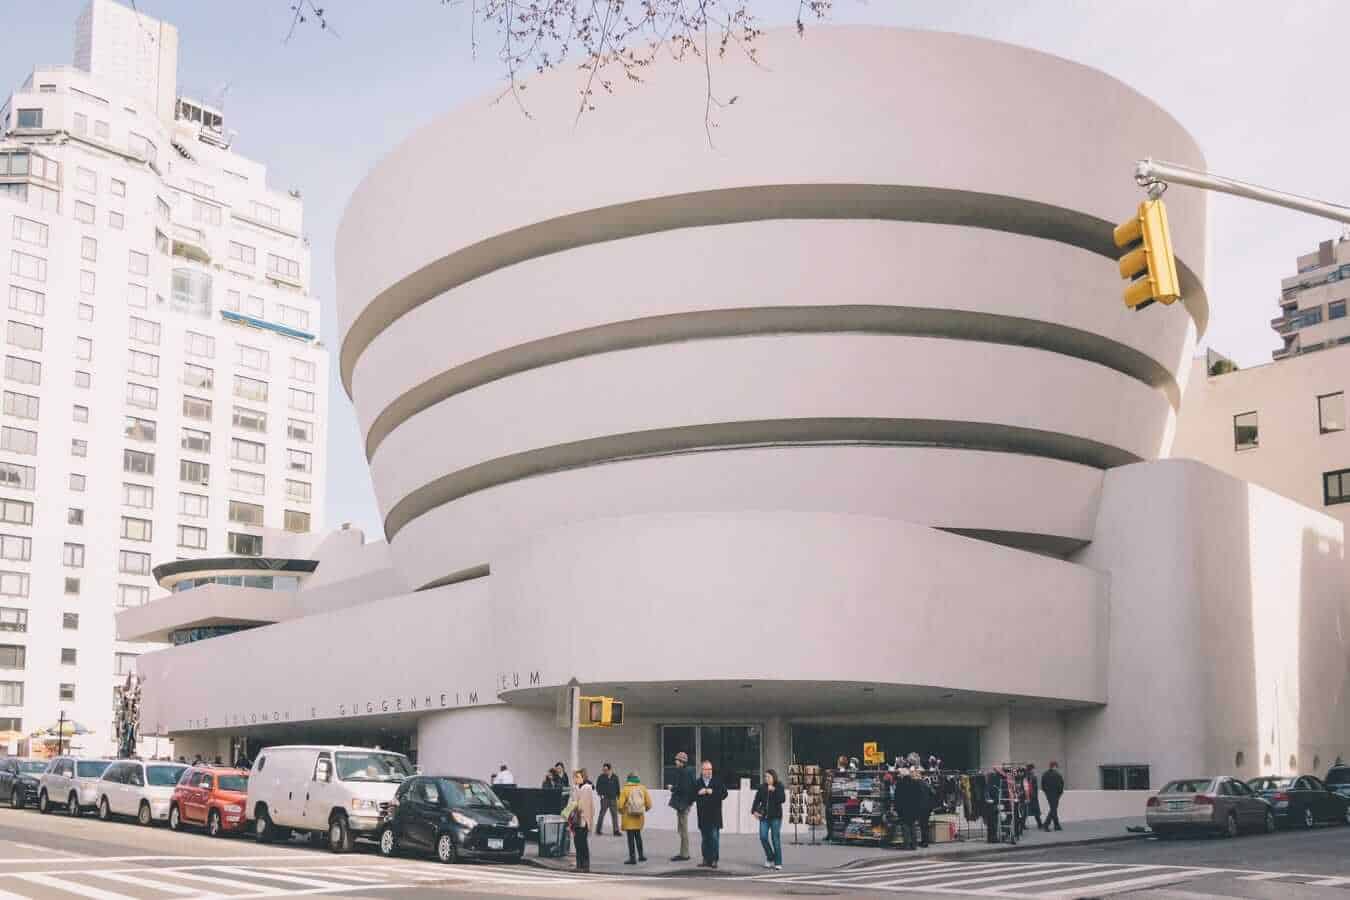 Guggenheim Museum, New York, USA